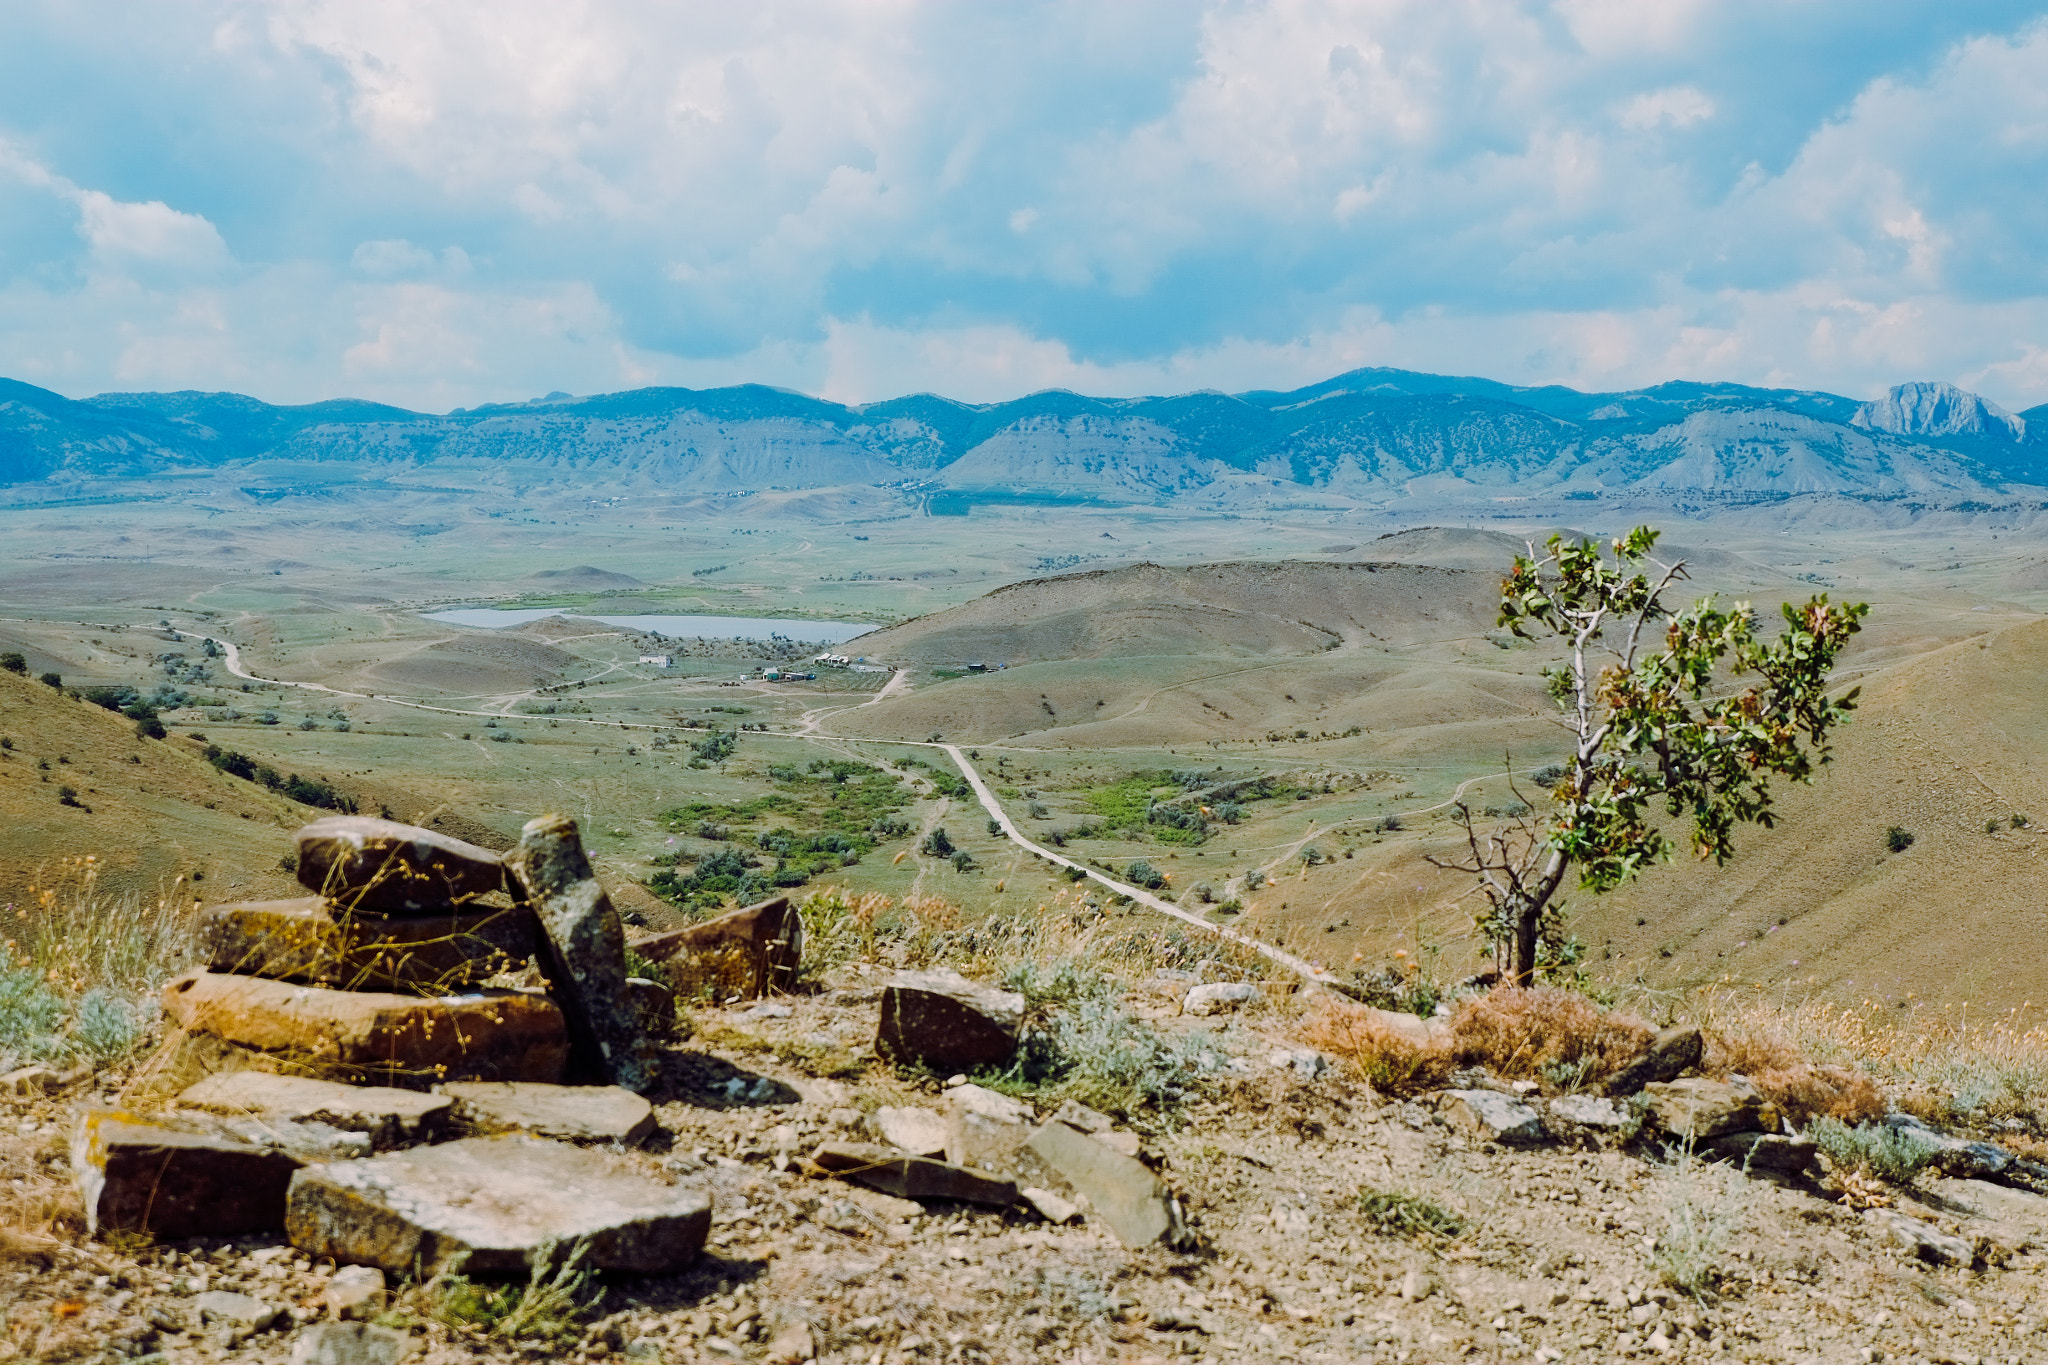 Fujifilm X-E1 sample photo. Crimea landscape photography